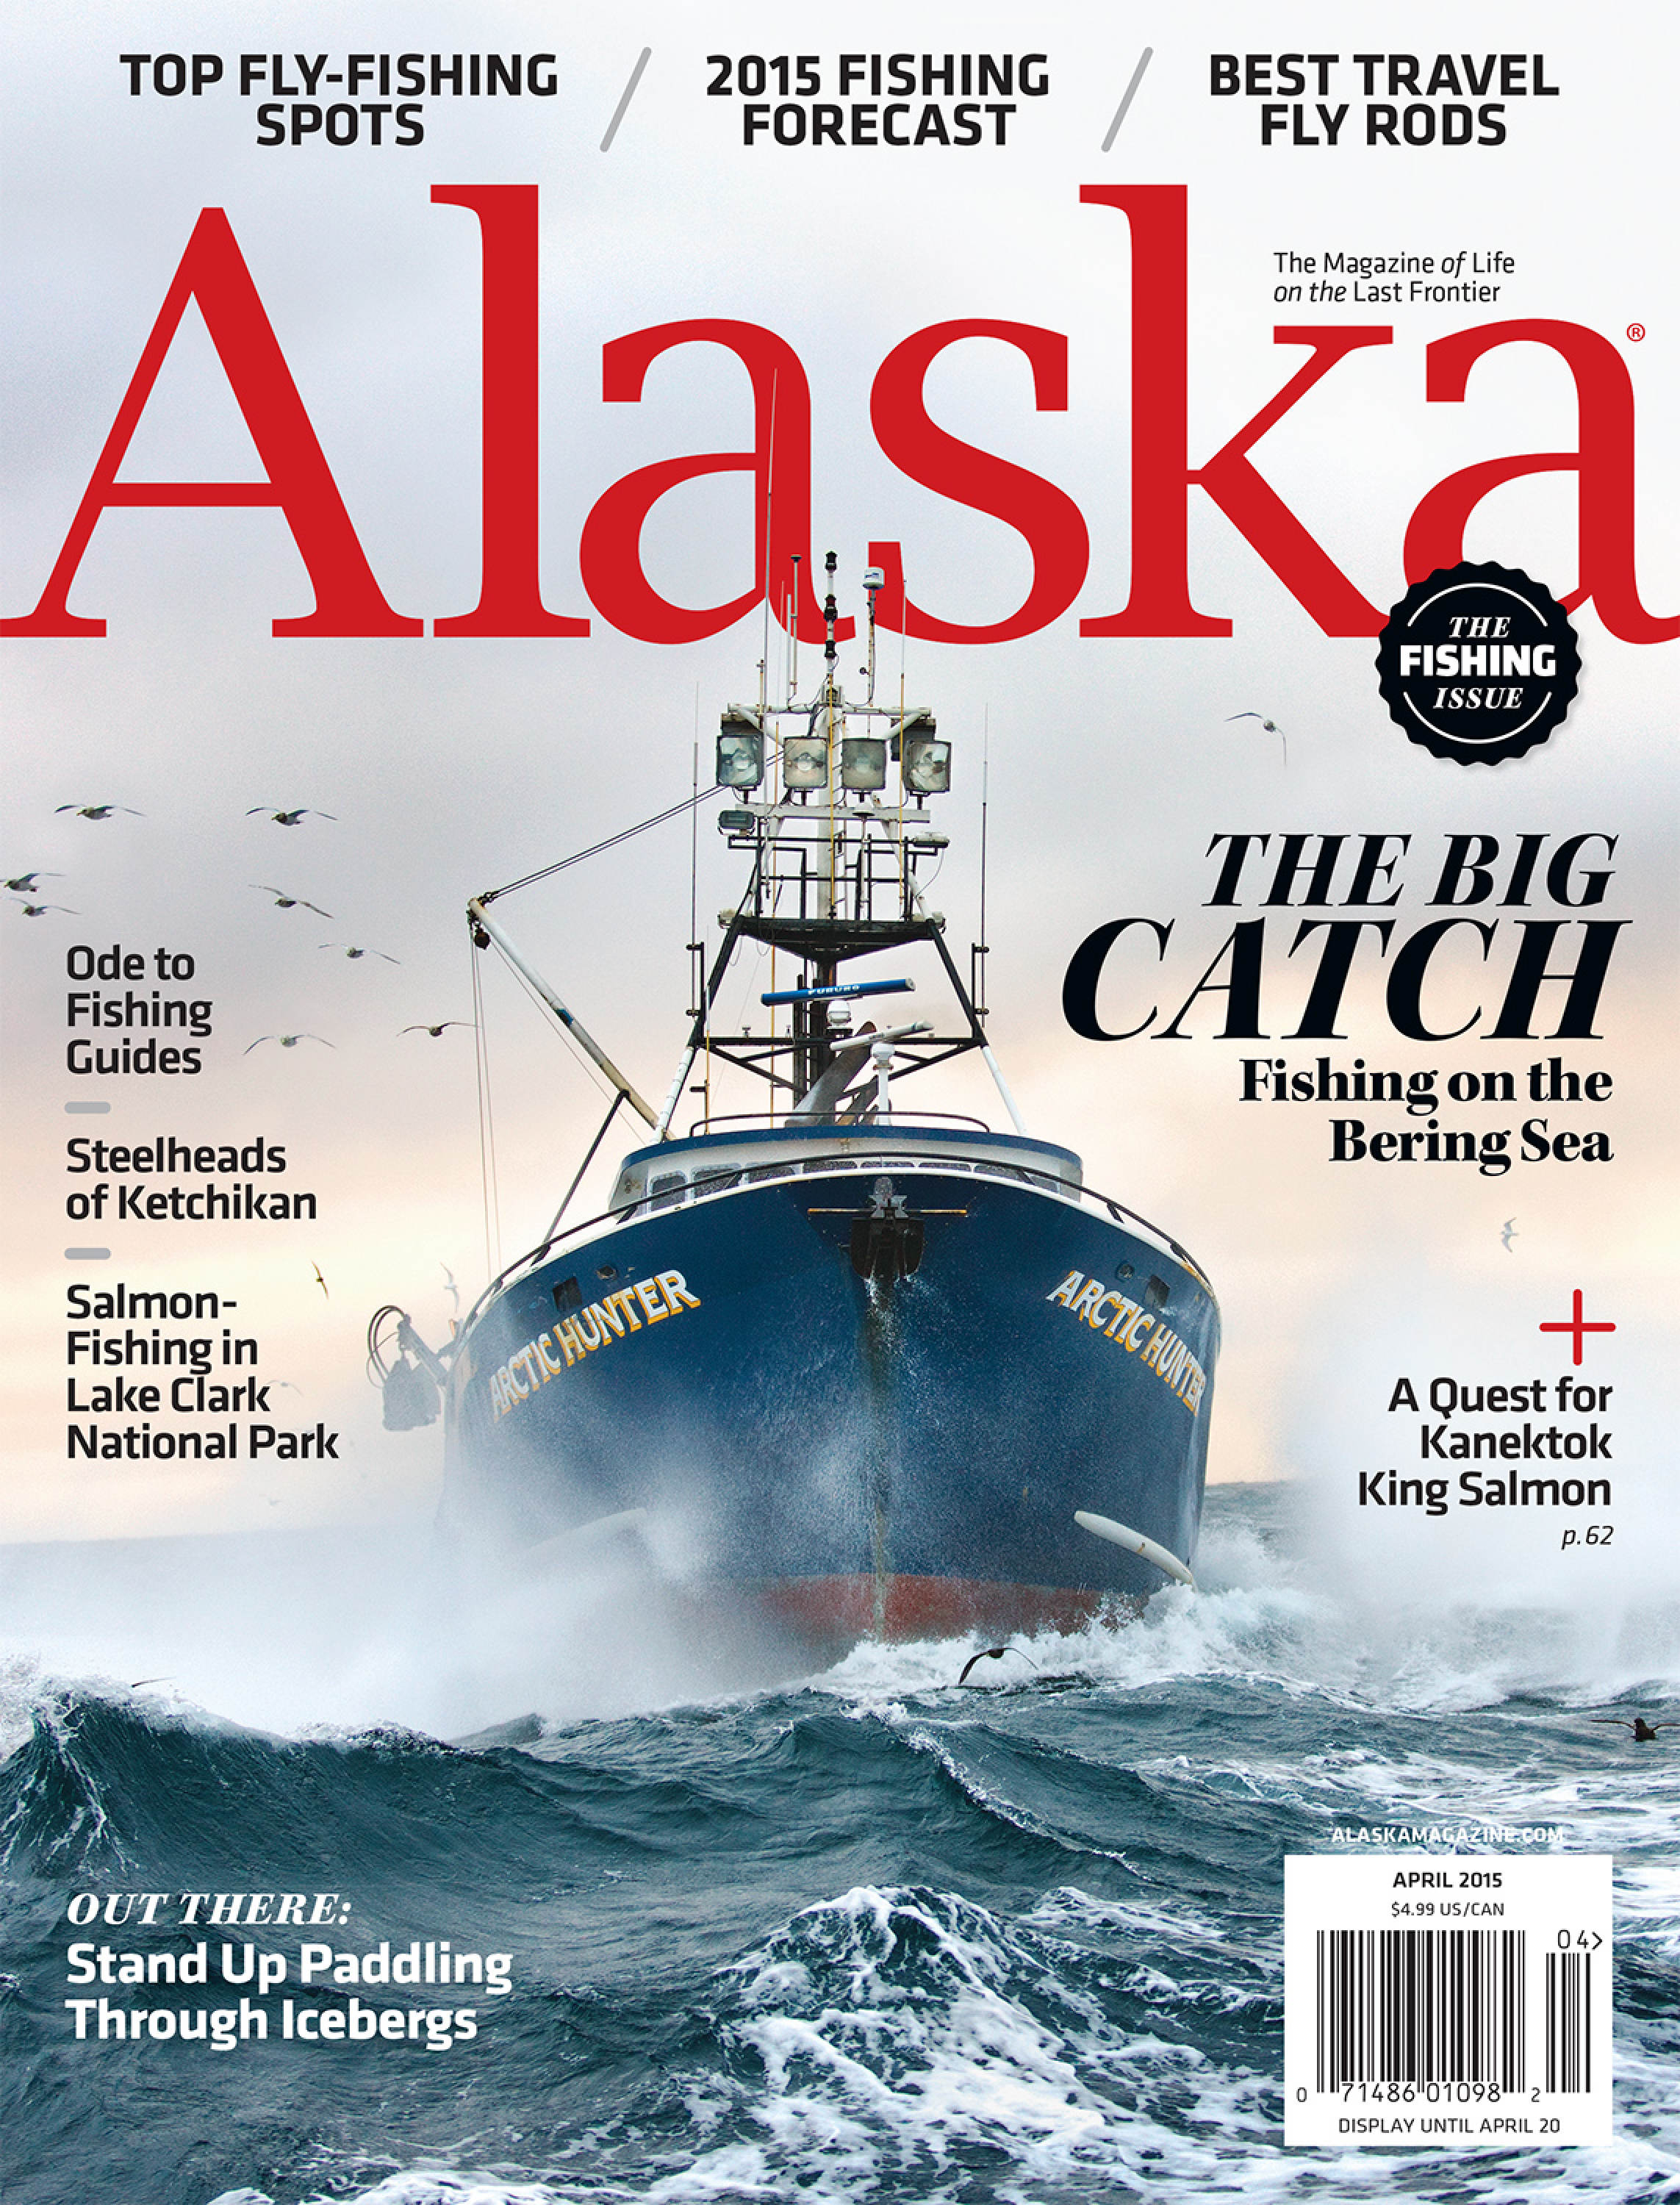 Alaska Magazine